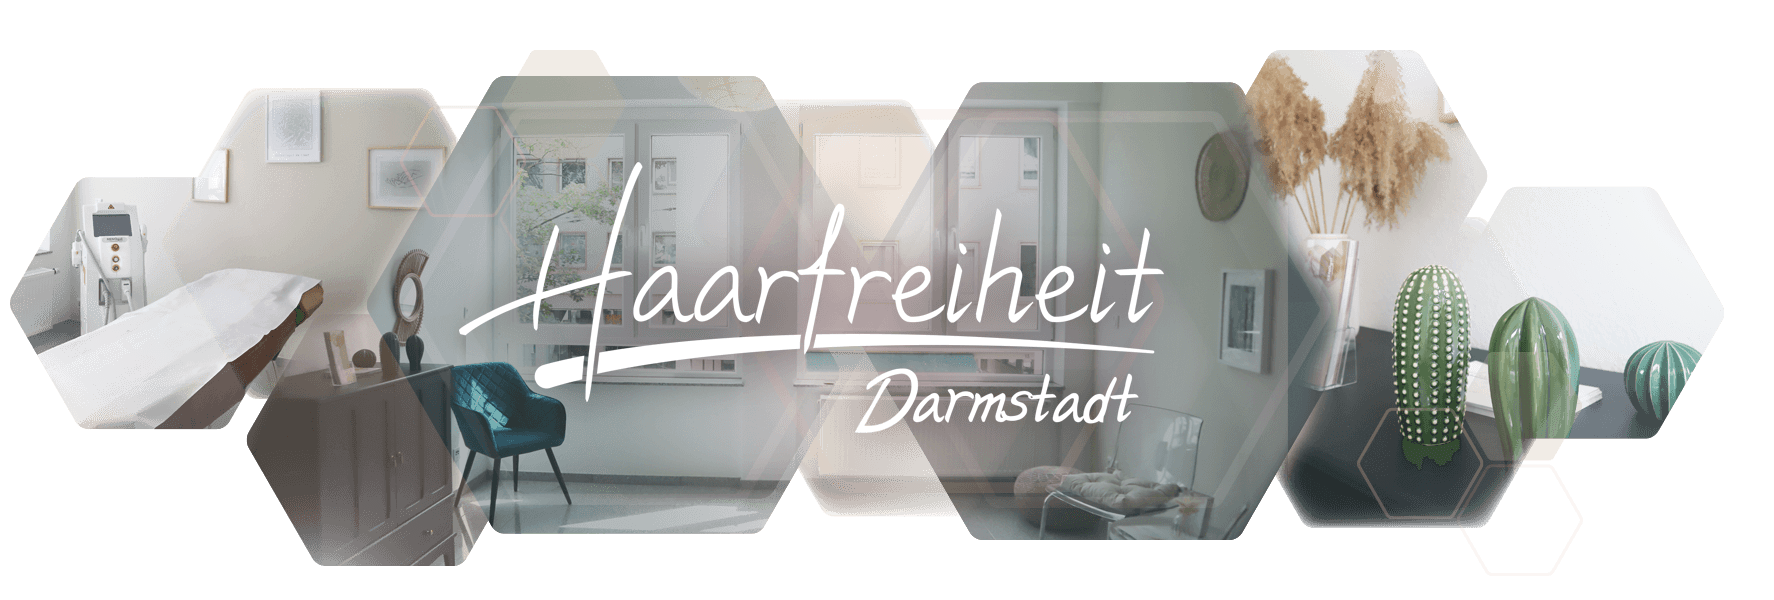 Photo collage rooms Haarfreiheit Darmstadt